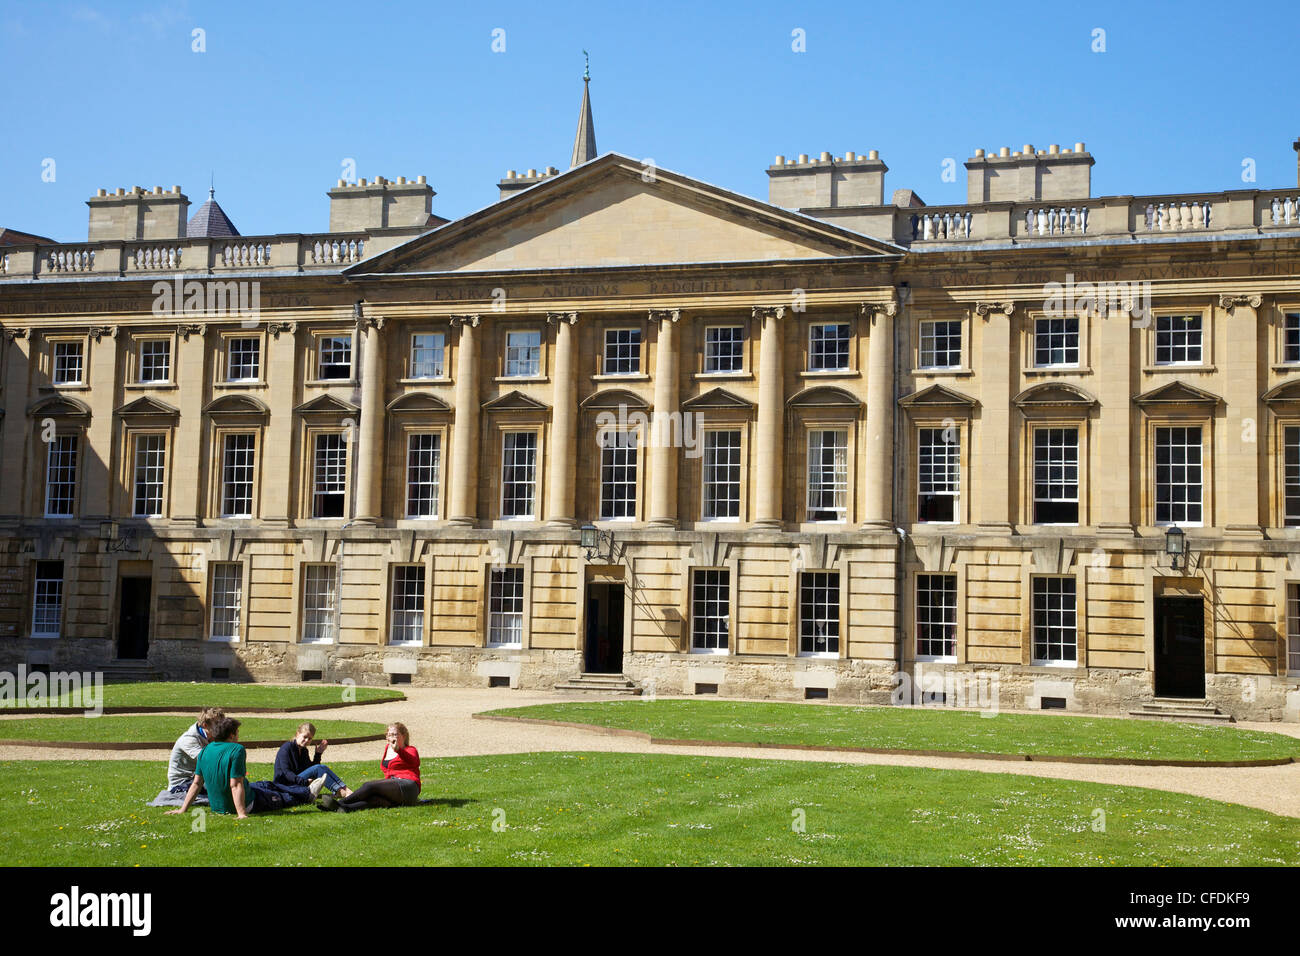 Les élèves assis dehors dans Peckwater Quadrangle, Christ Church, Oxford University, Oxford, Oxfordshire, England, UK Banque D'Images